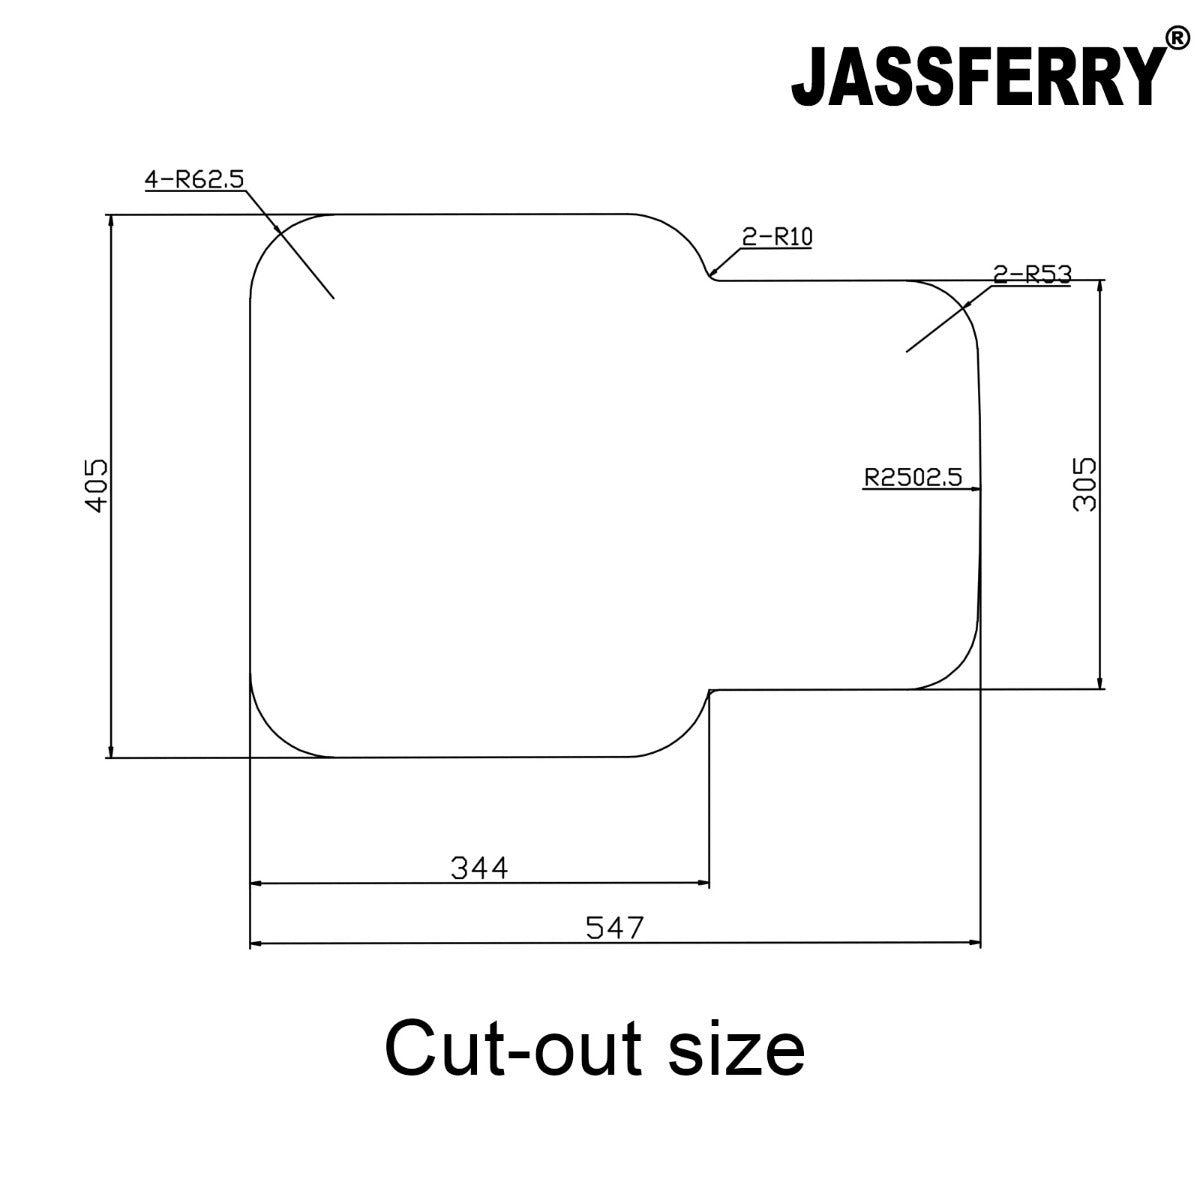 JassferryJASSFERRY Undermount Stainless Steel Kitchen Sink 1.5 Bowl Righthand Half - 984Kitchen Sinks